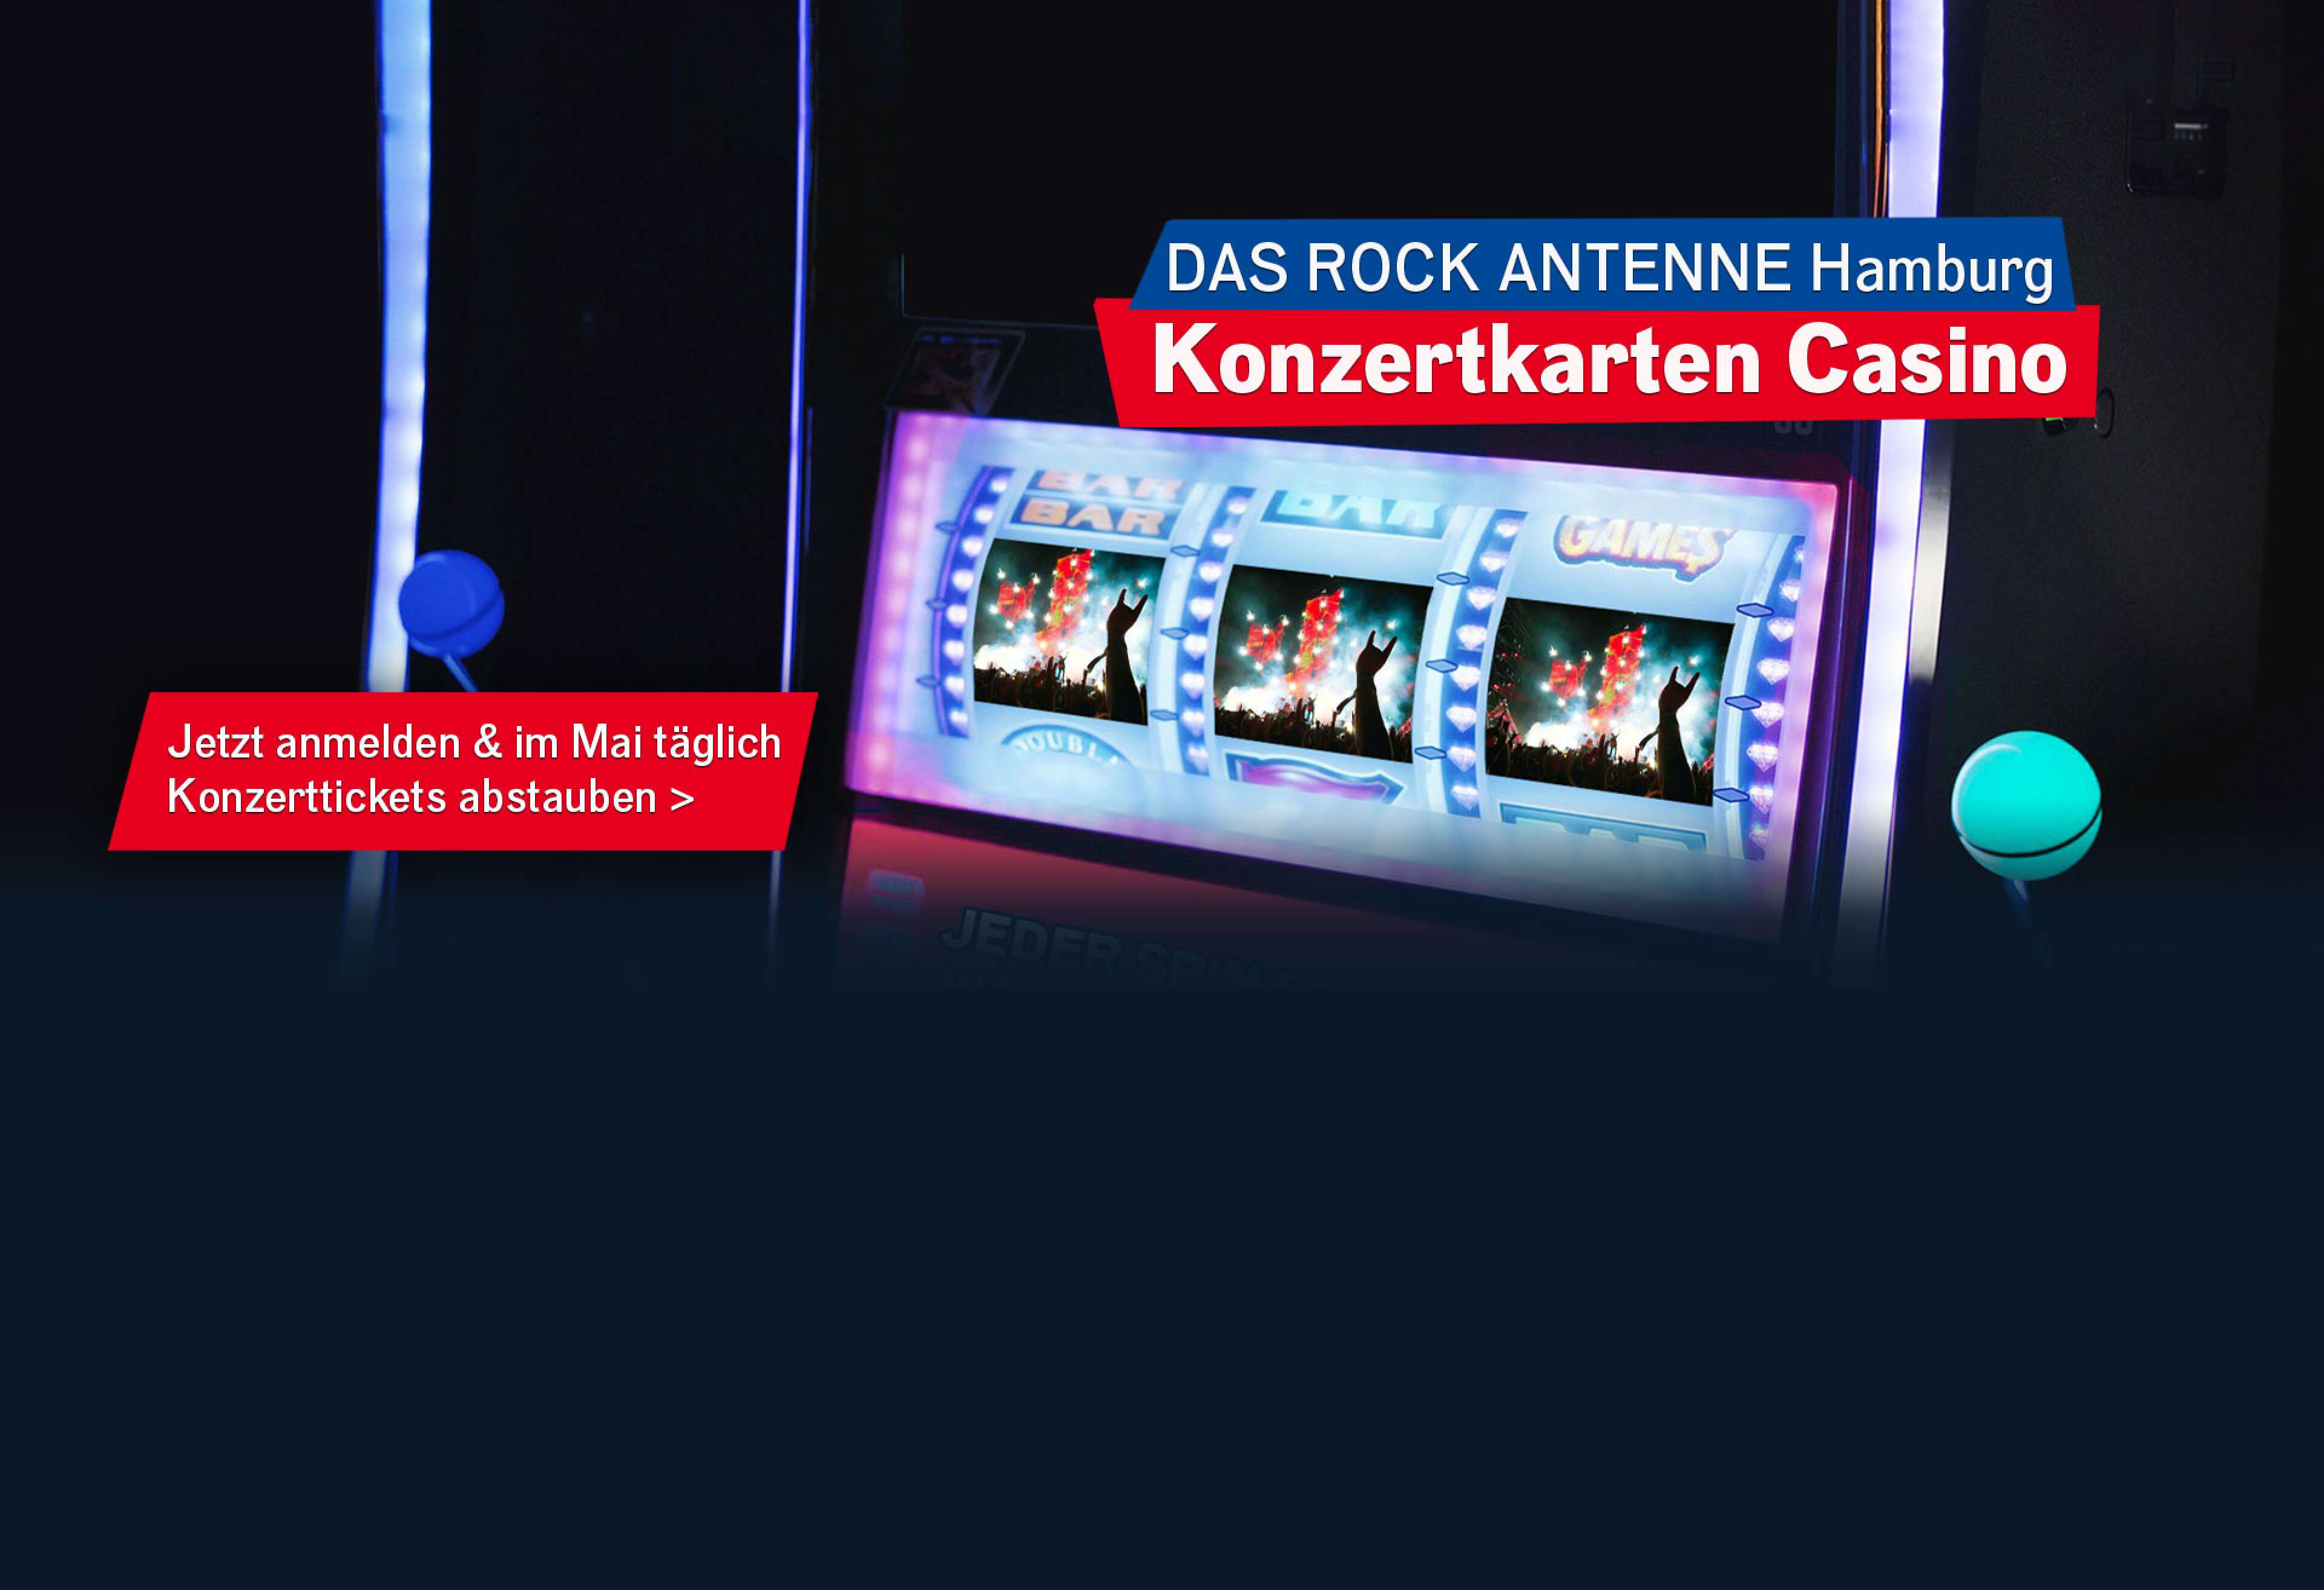 Nahaufnahme des Bildschirms eines Spielautomaten, darauf zu sehen sind drei Fotos von einem Konzert in einer Reihe, dazu der Text: Das ROCK ANTENNE Hamburg Konzertkarten Casino -jetzt mitmachen und im Mai täglich Konzertkarten abstauben